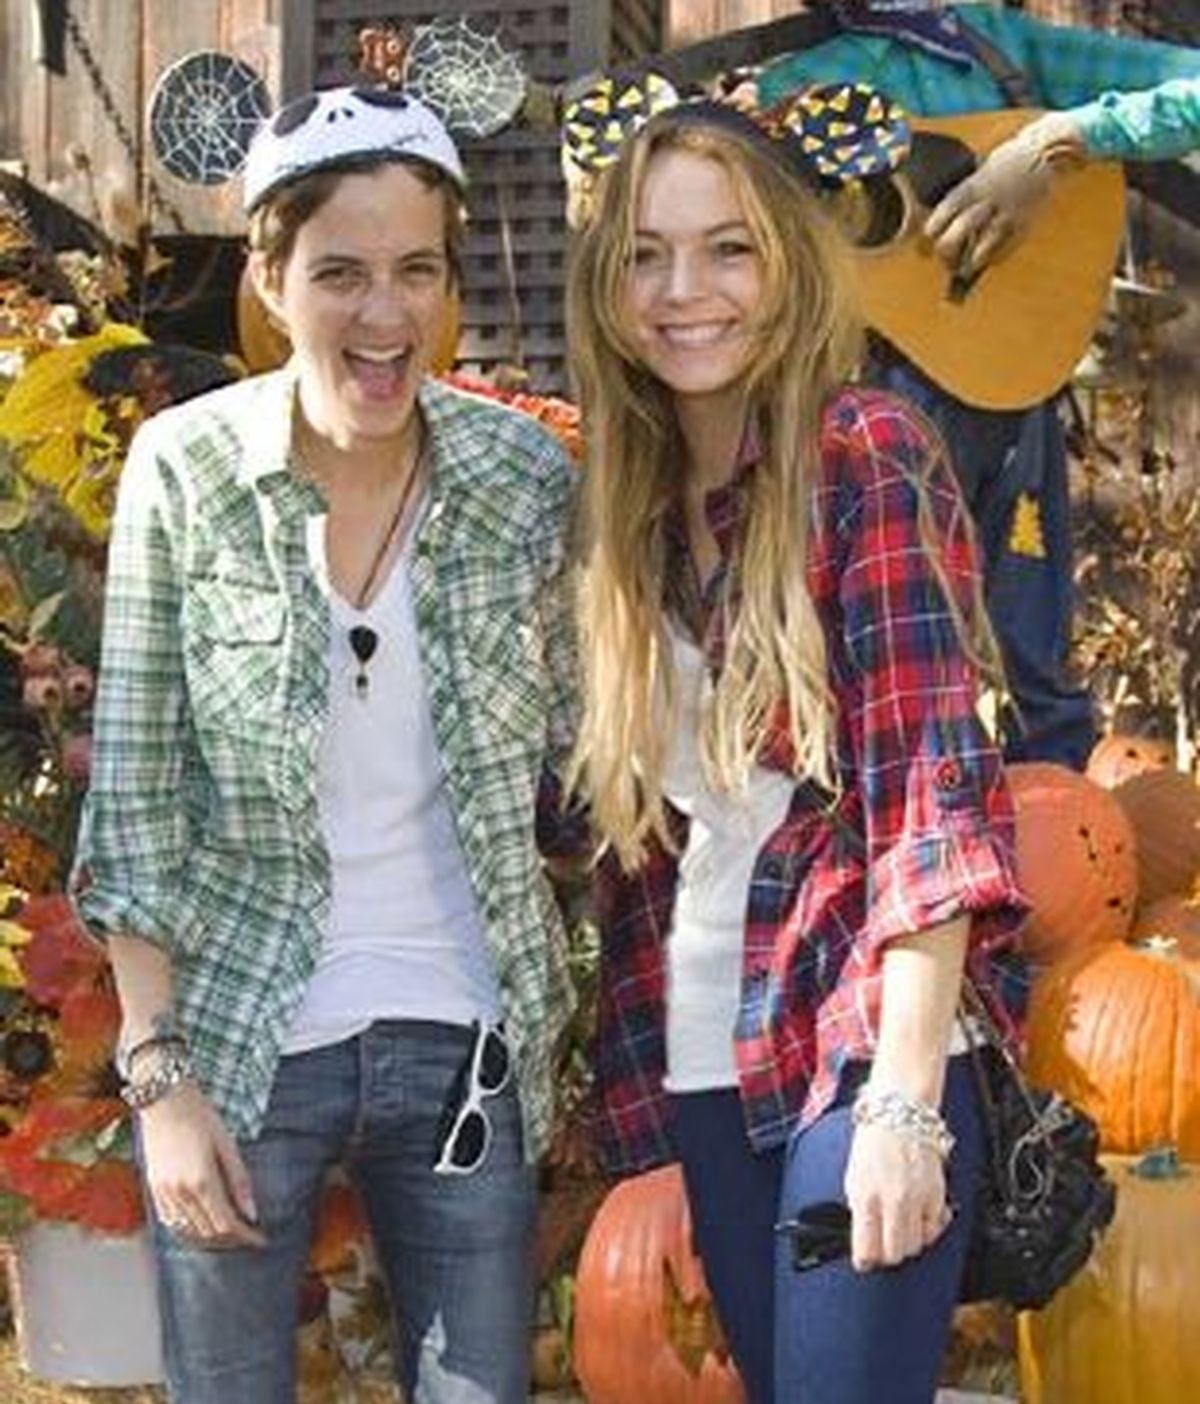 Imagen de la actriz Lindsay Lohan y su novia, Samantha Ronson, en Disneyland. Foto: AP